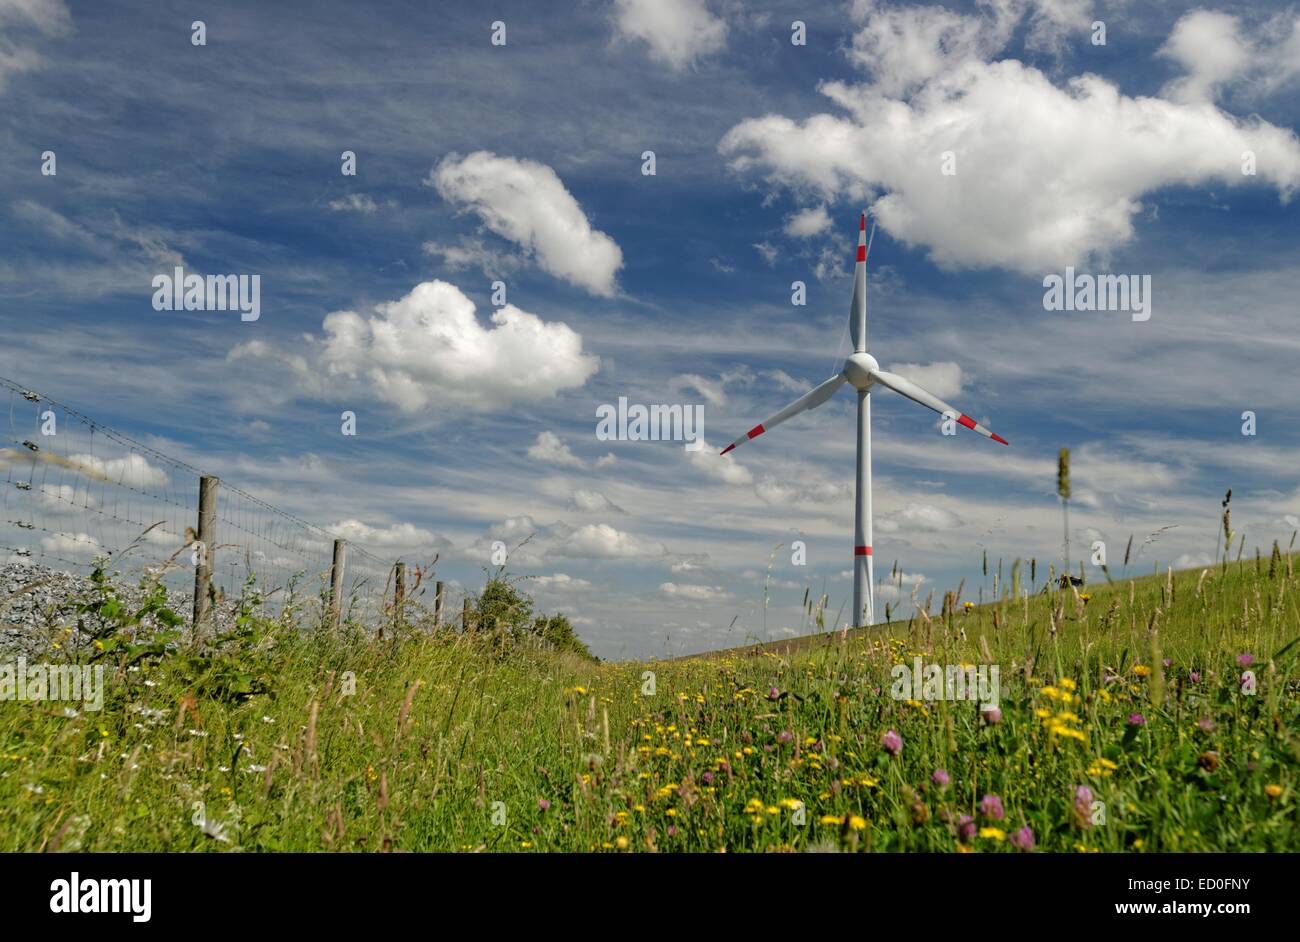 Germania, Ostfriesland, turbina eolica in prato contro il cielo nuvoloso Foto Stock